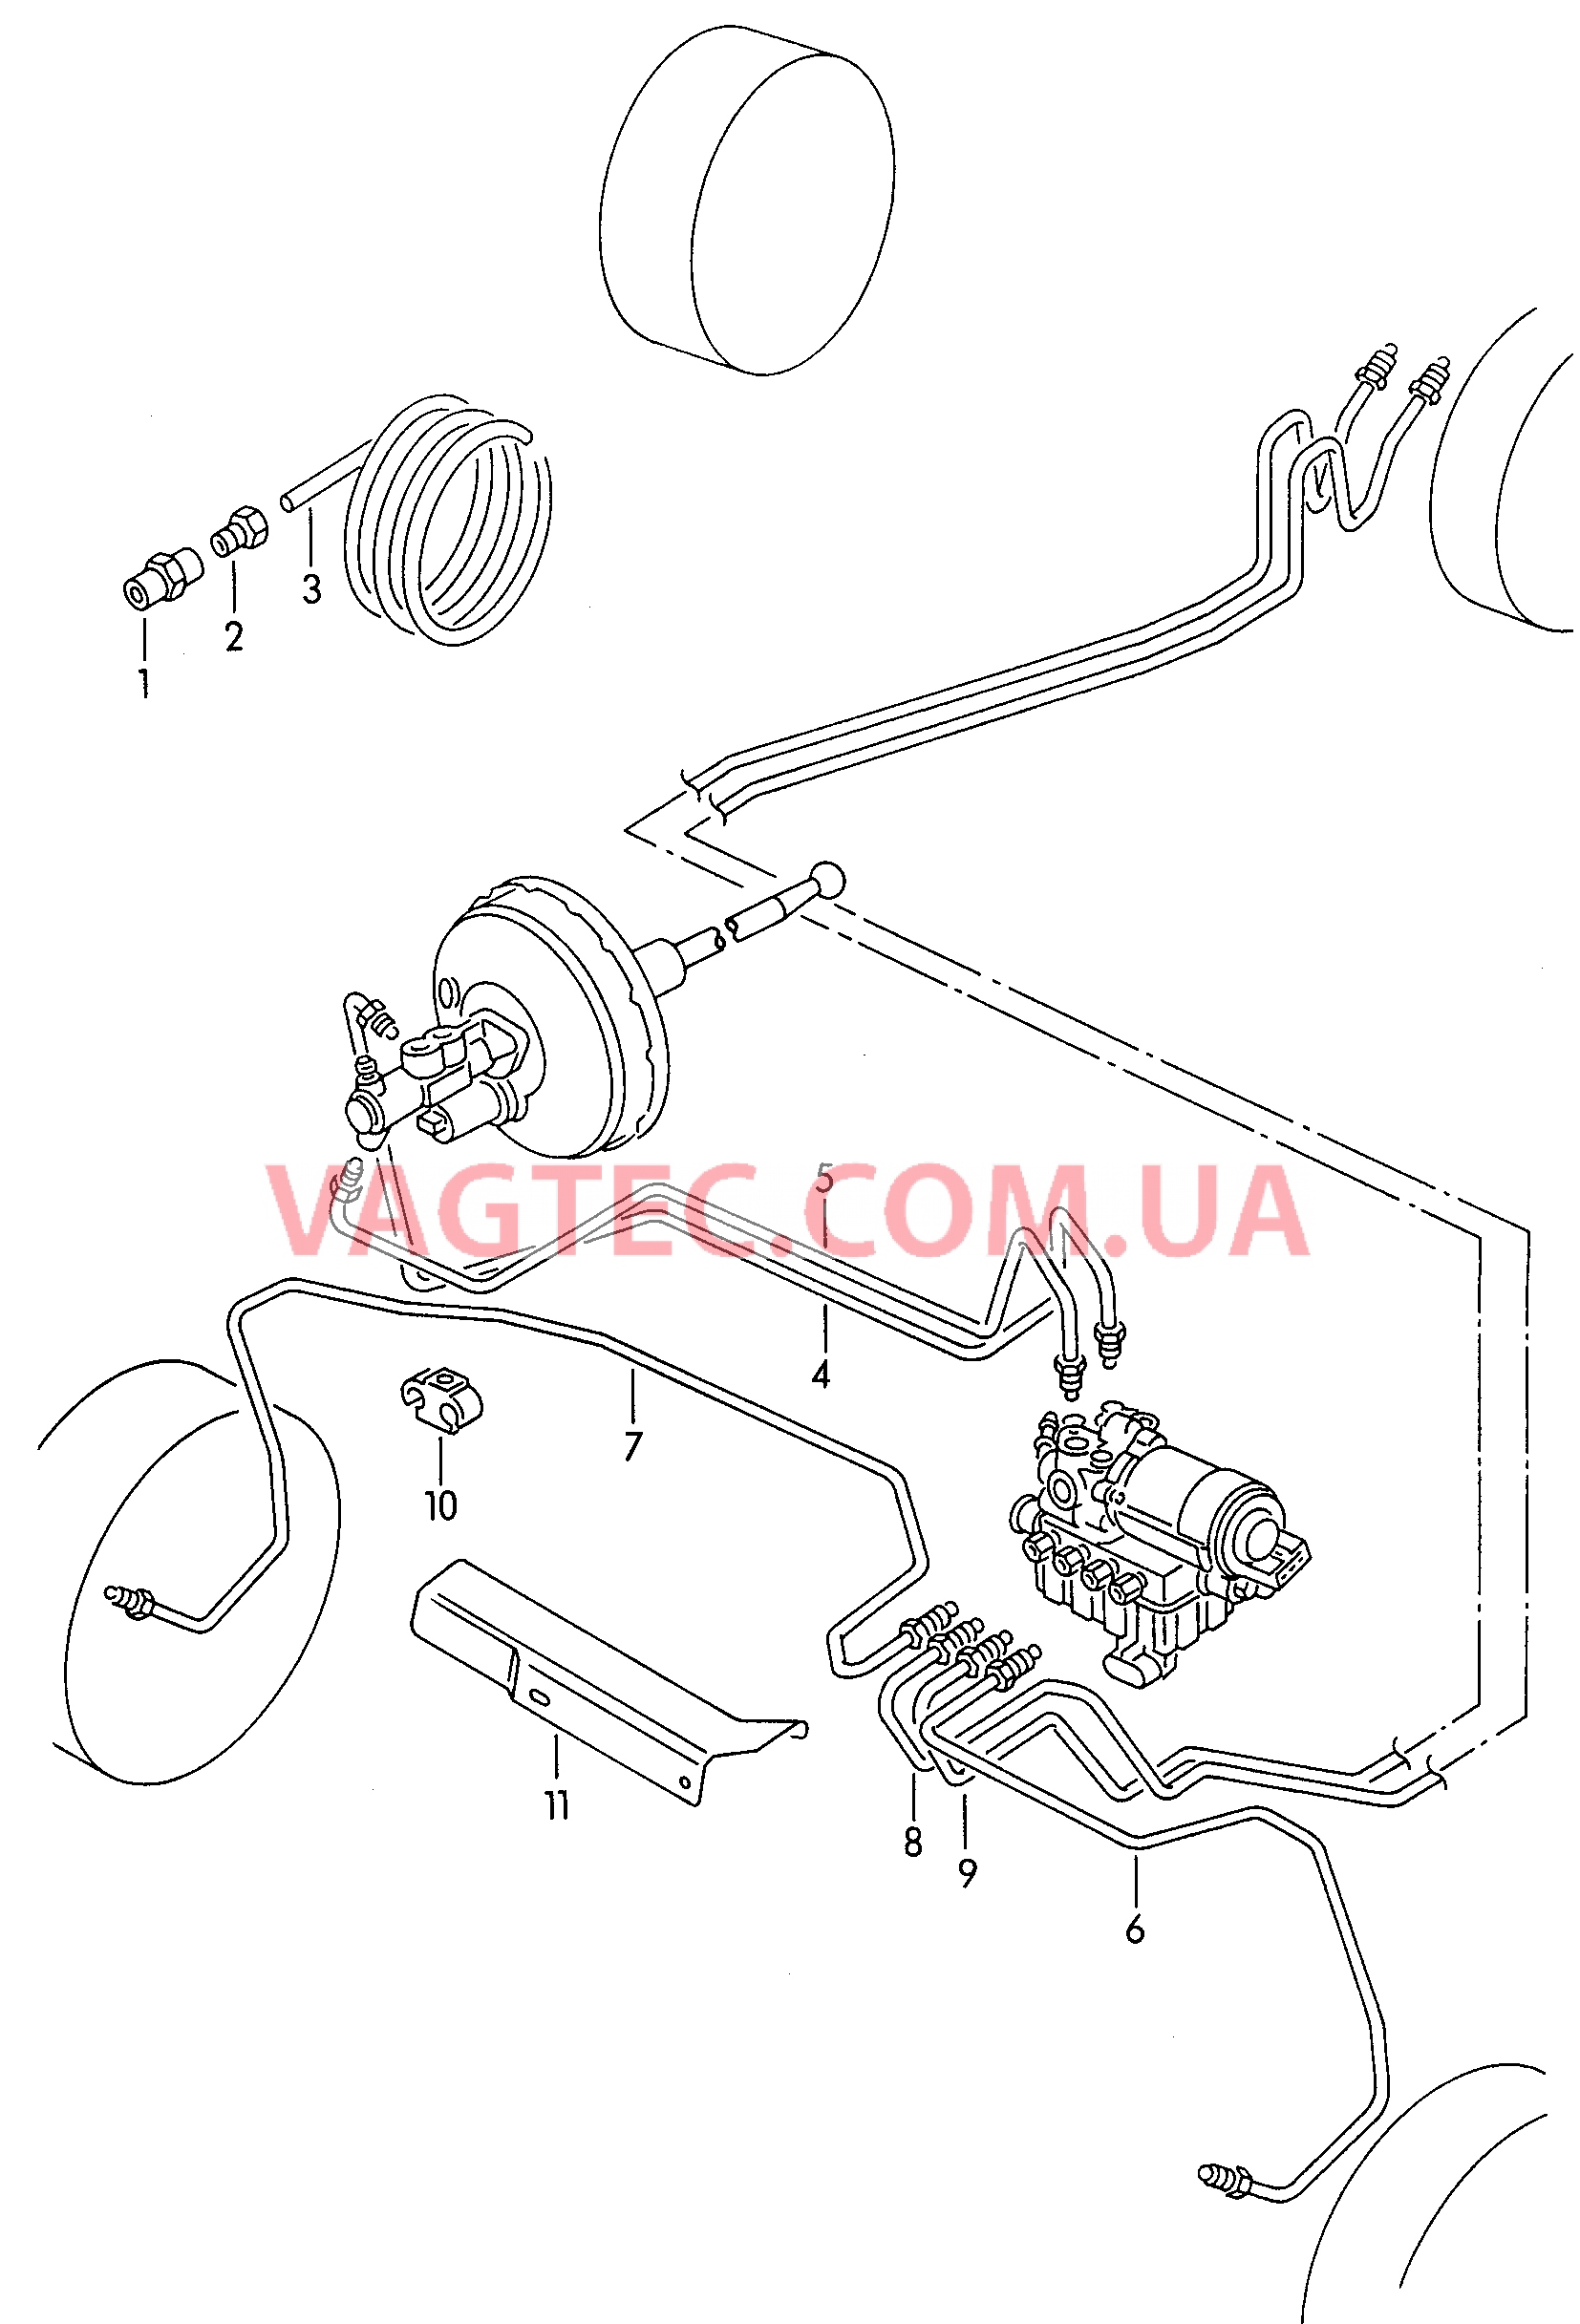 Тормозная трубка для а/м с антиблокировочной системой тормозов        -ABS-  для SEAT Ibiza 2002